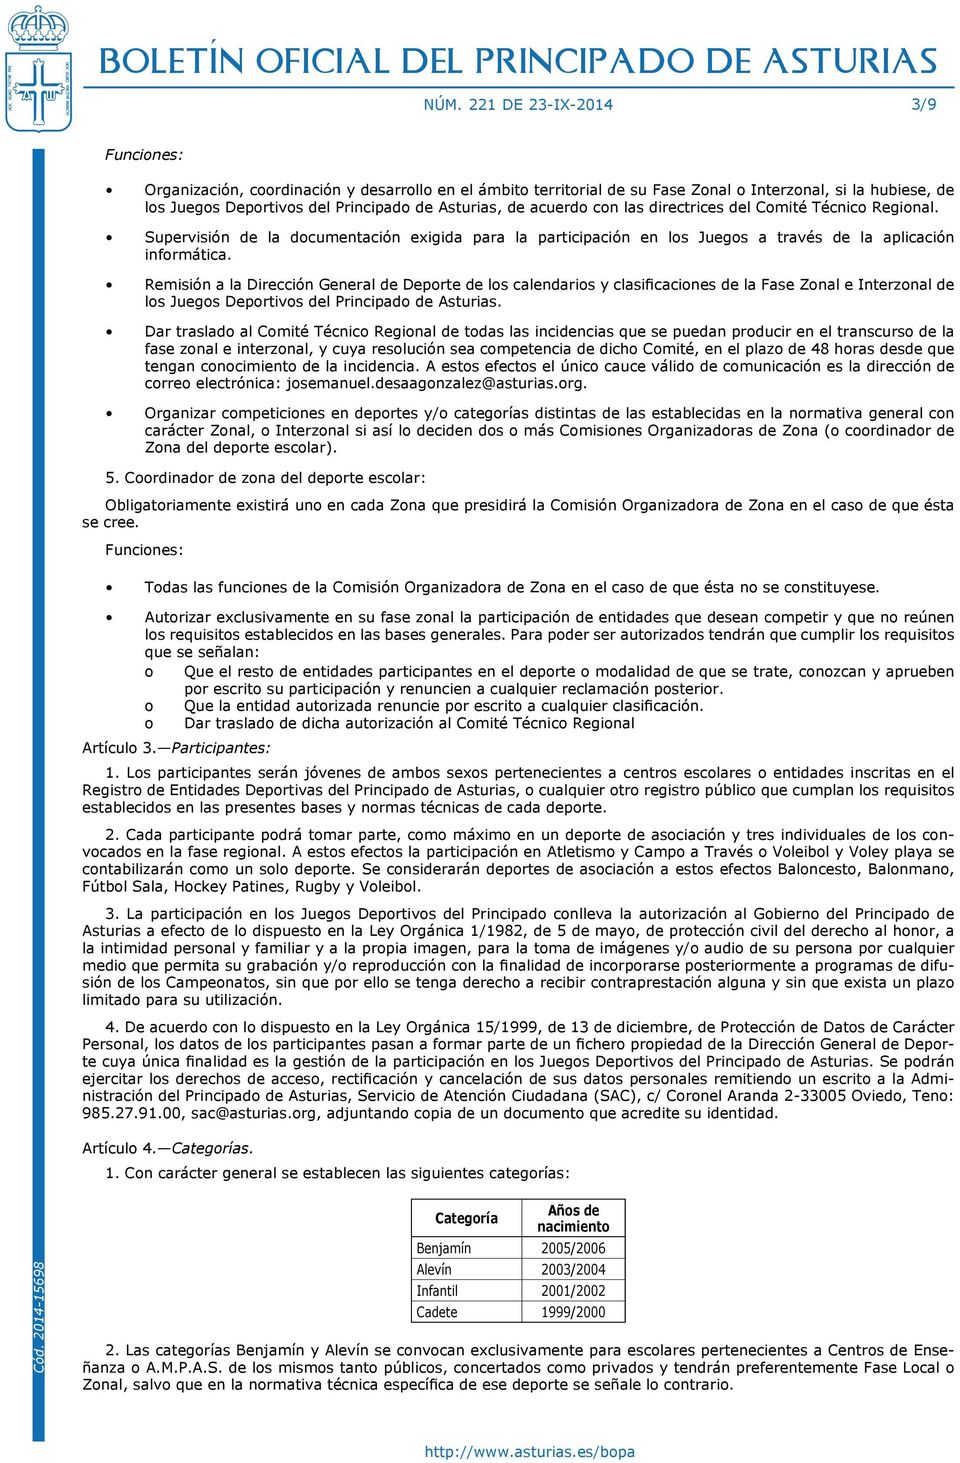 Remisión a la Dirección General de Deporte de los calendarios y clasificaciones de la Fase Zonal e Interzonal de los Juegos Deportivos del Principado de Asturias.